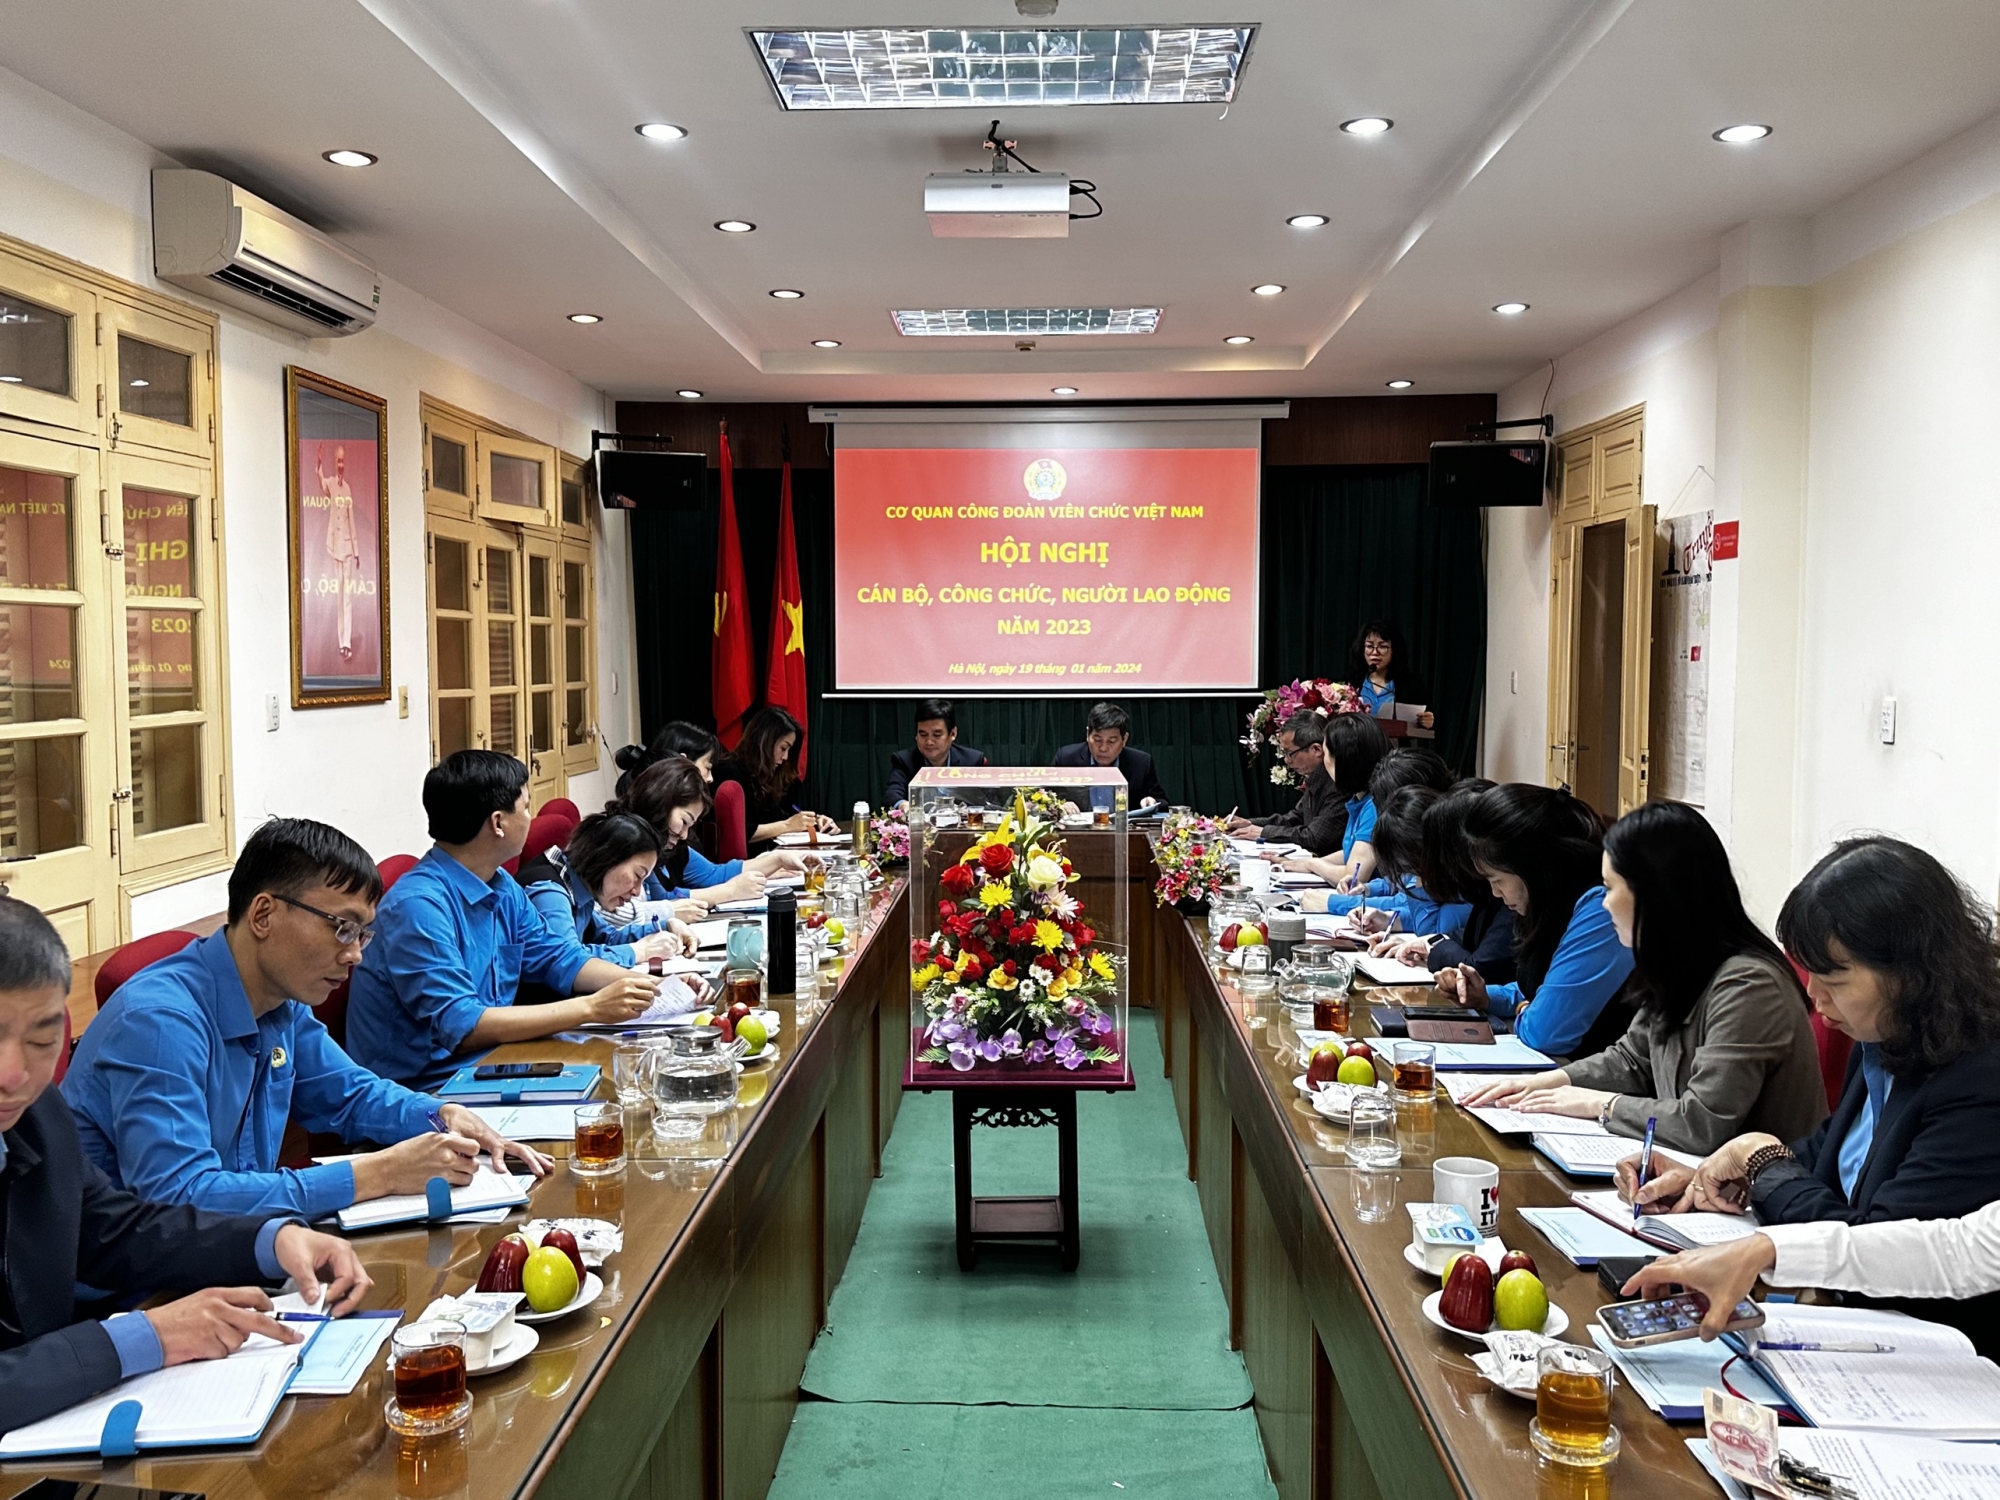 Cơ quan Công đoàn Viên chức Việt Nam: Nỗ lực, quyết tâm hoàn thành xuất sắc nhiệm vụ năm 2023